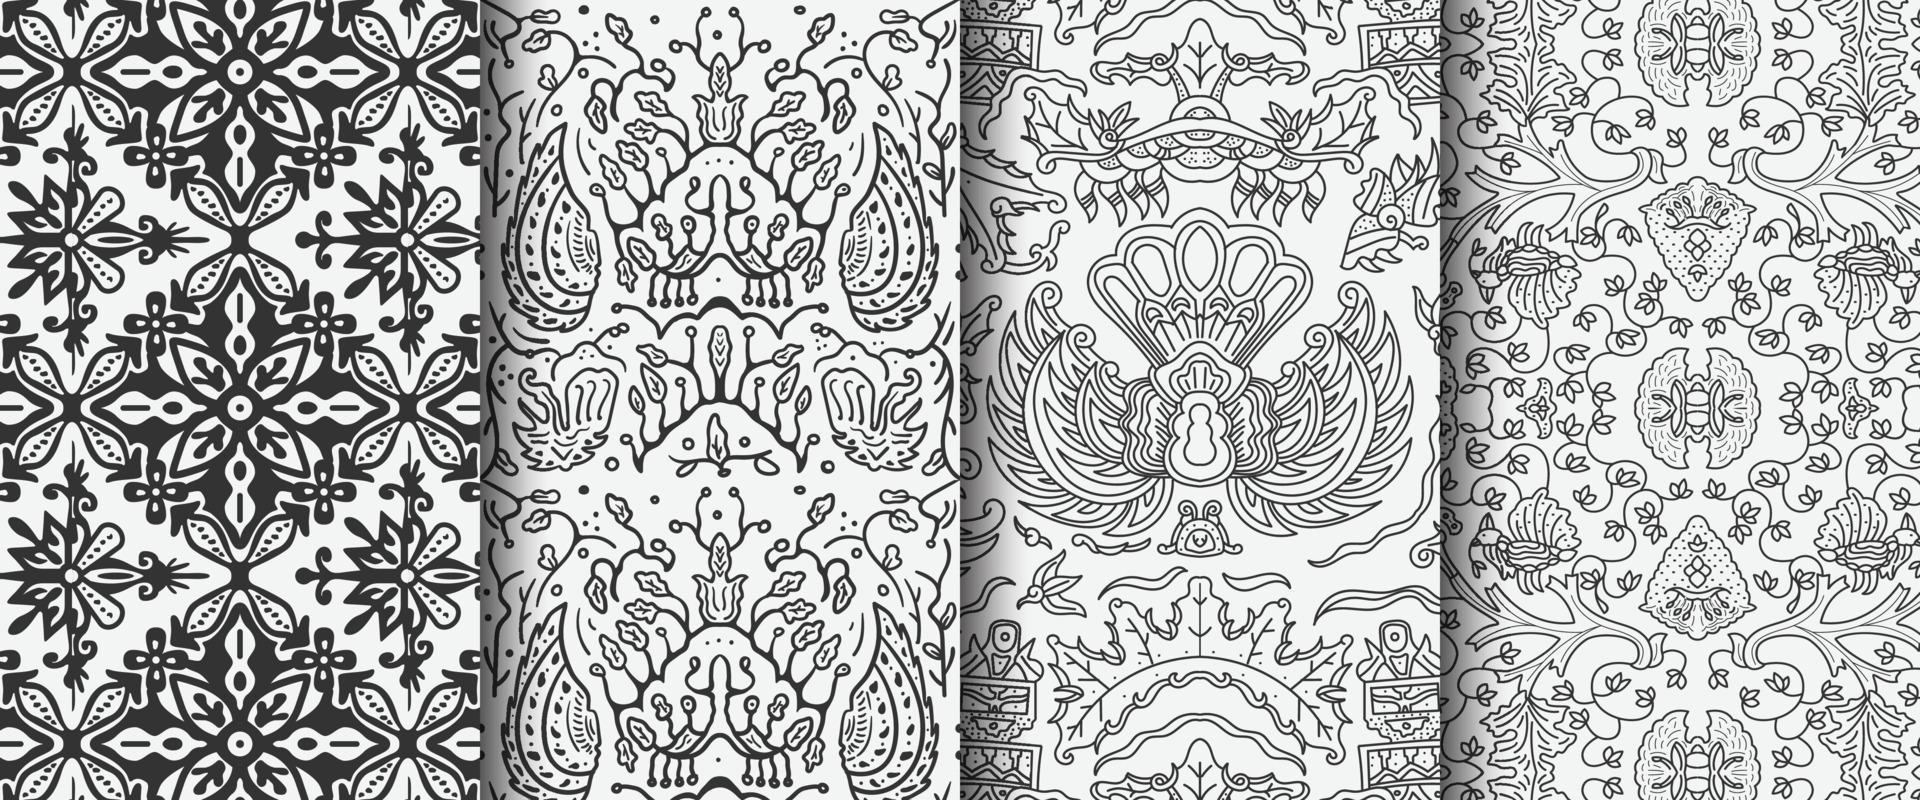 verschillende batik naadloze patroon één kleur. etnisch monolinepatroon voor achtergrond vector